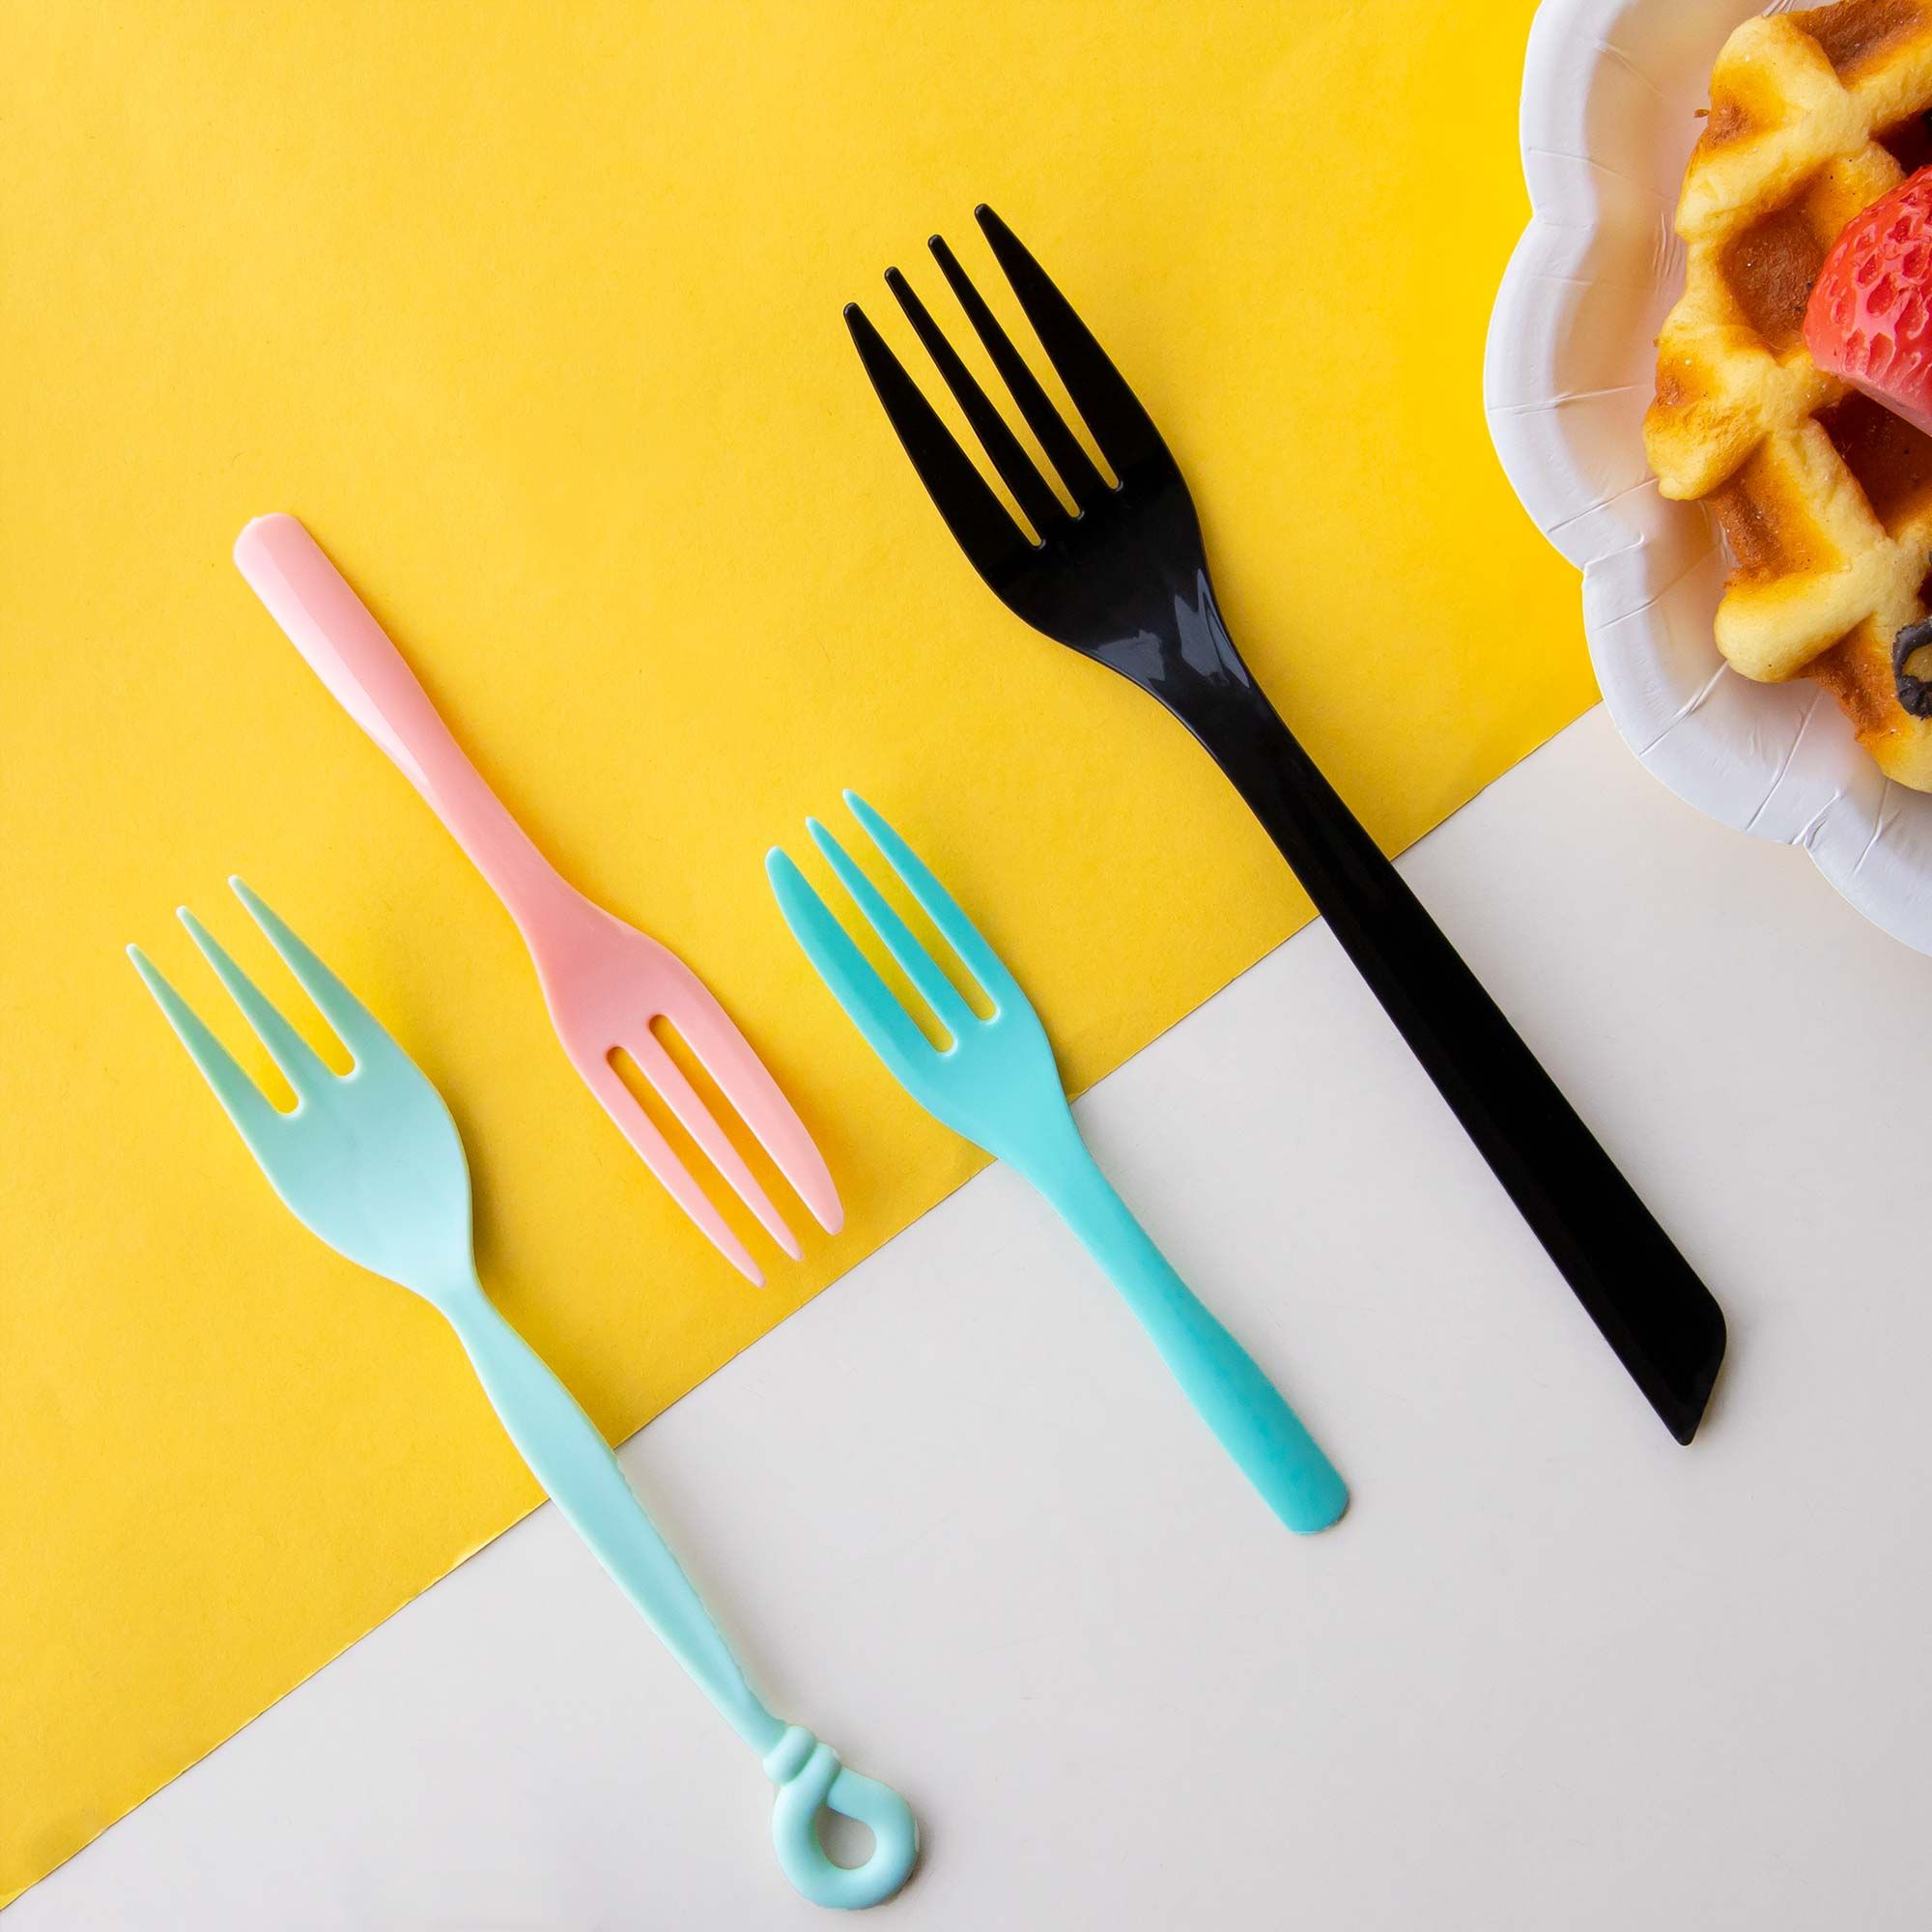 Forchetta di plastica - Forchette monouso, forchette colorate, Design di  posate di plastica personalizzate e produzione di articoli per la tavola in  plastica